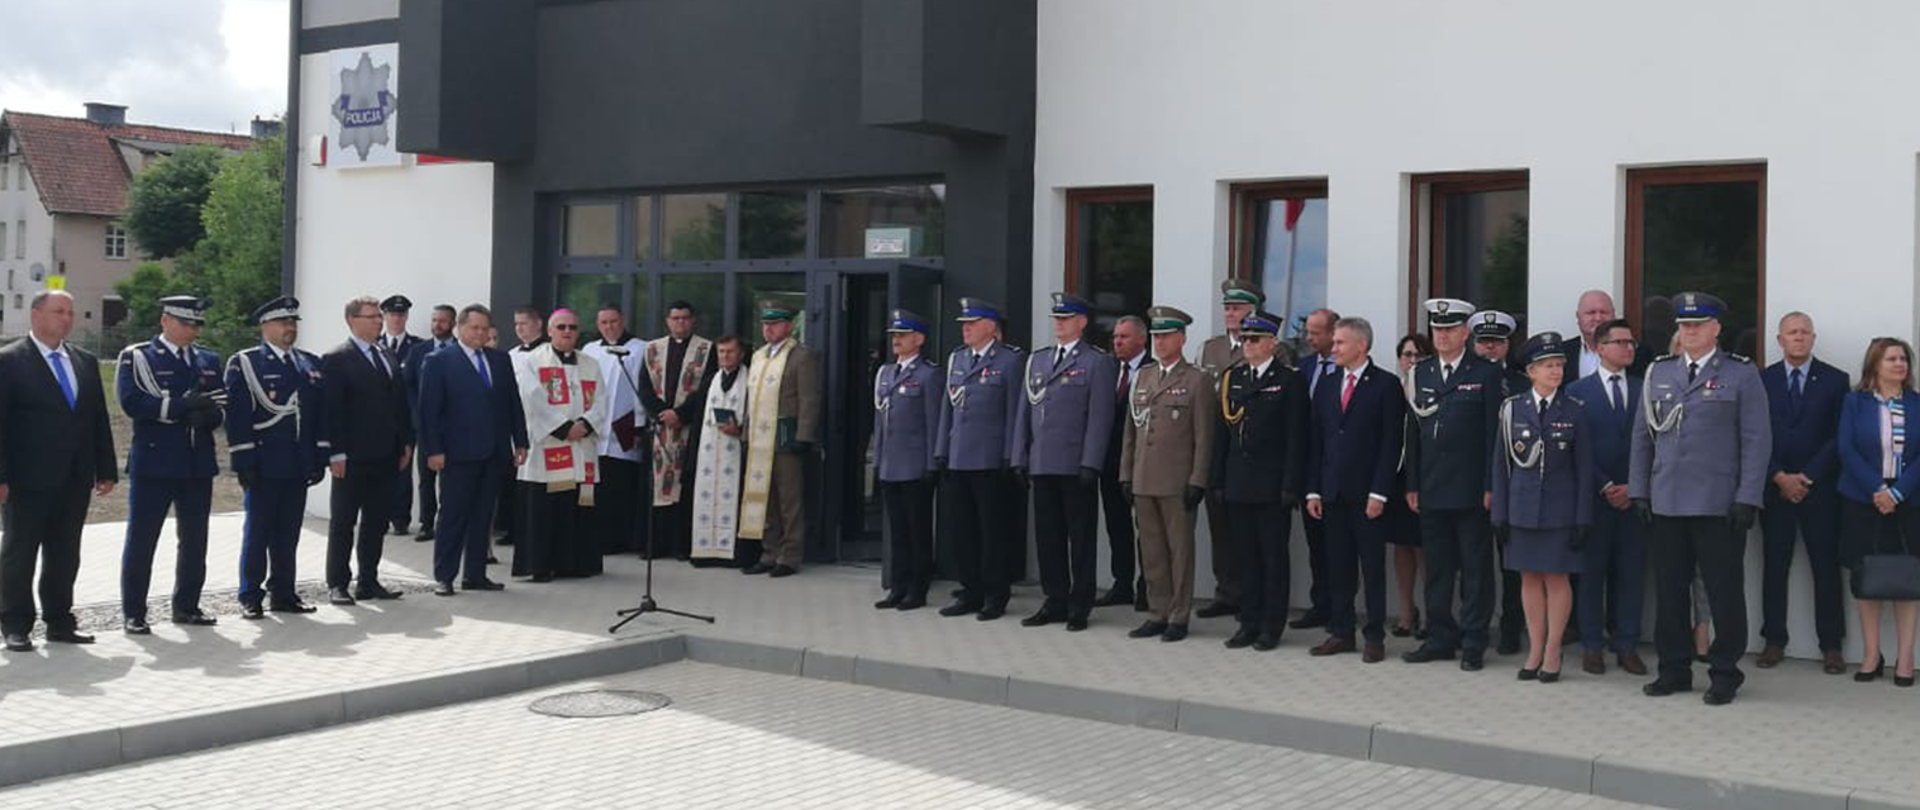 Wiceminister Jarosław Zieliński wziął udział w obchodach Święta Policji garnizonu warmińsko-mazurskiego w Kętrzynie oraz otwarciu nowej siedziby Komisariatu Policji w Korszach.